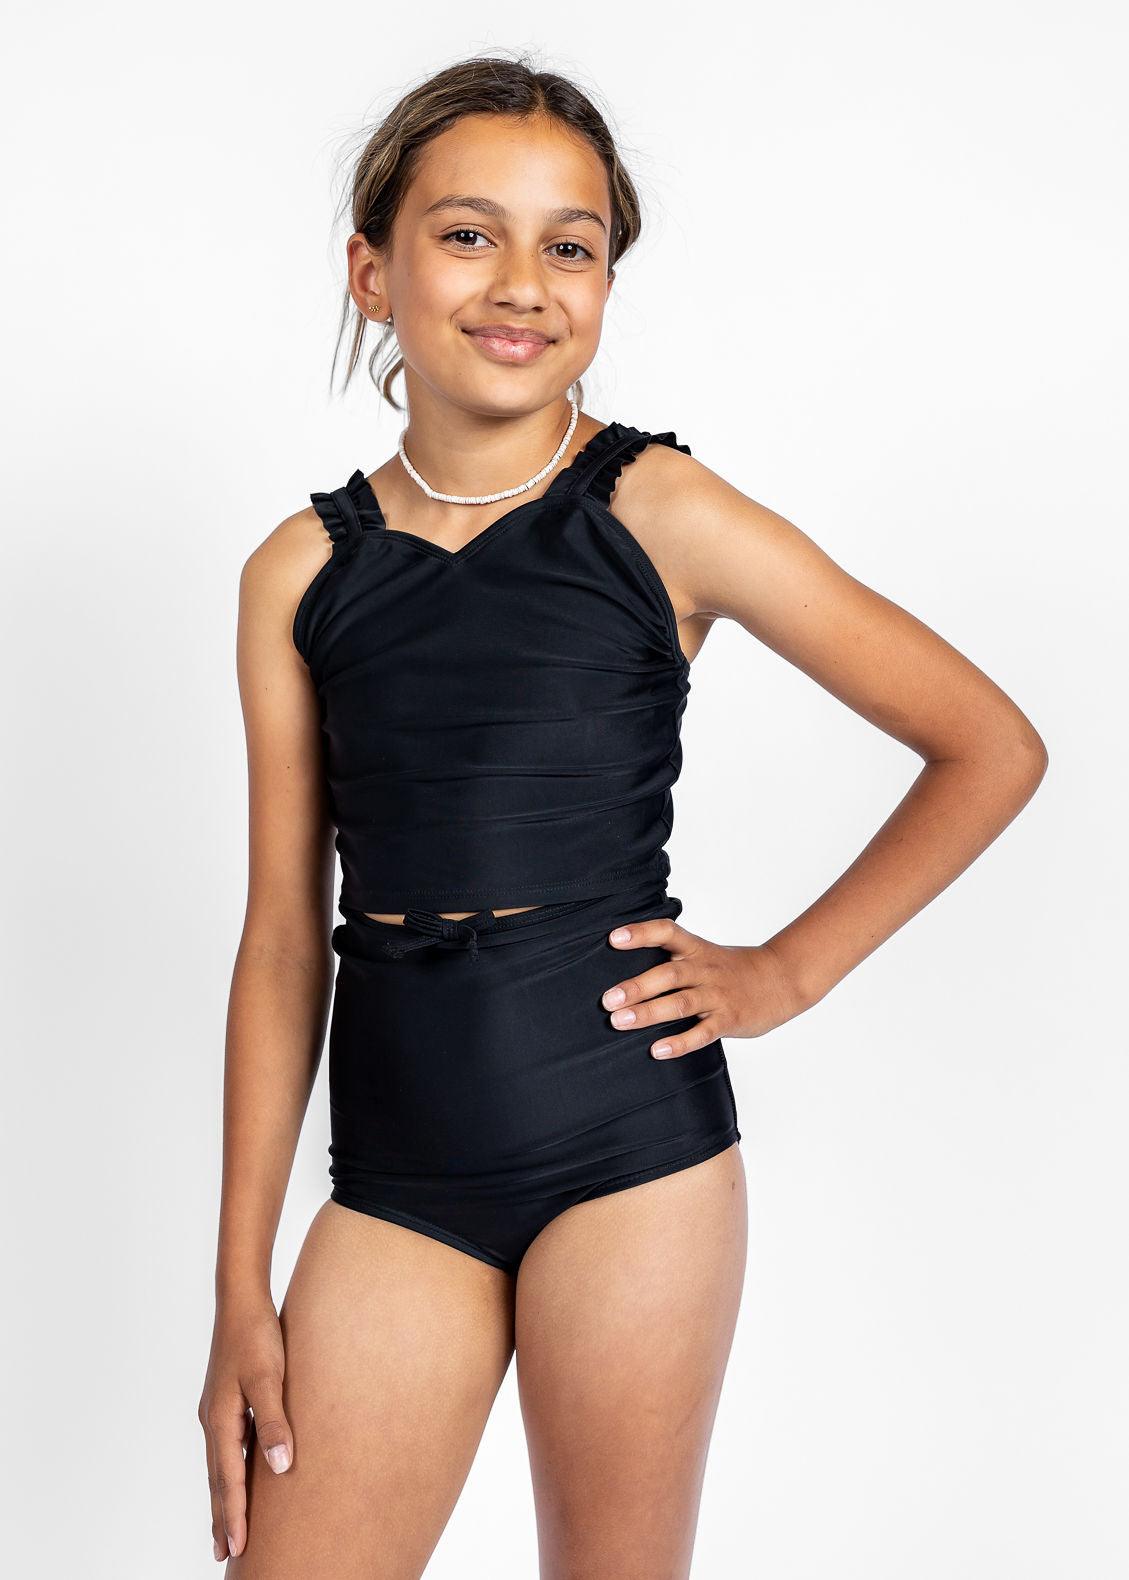 Teen Girl Crop Top Swimsuit - Black